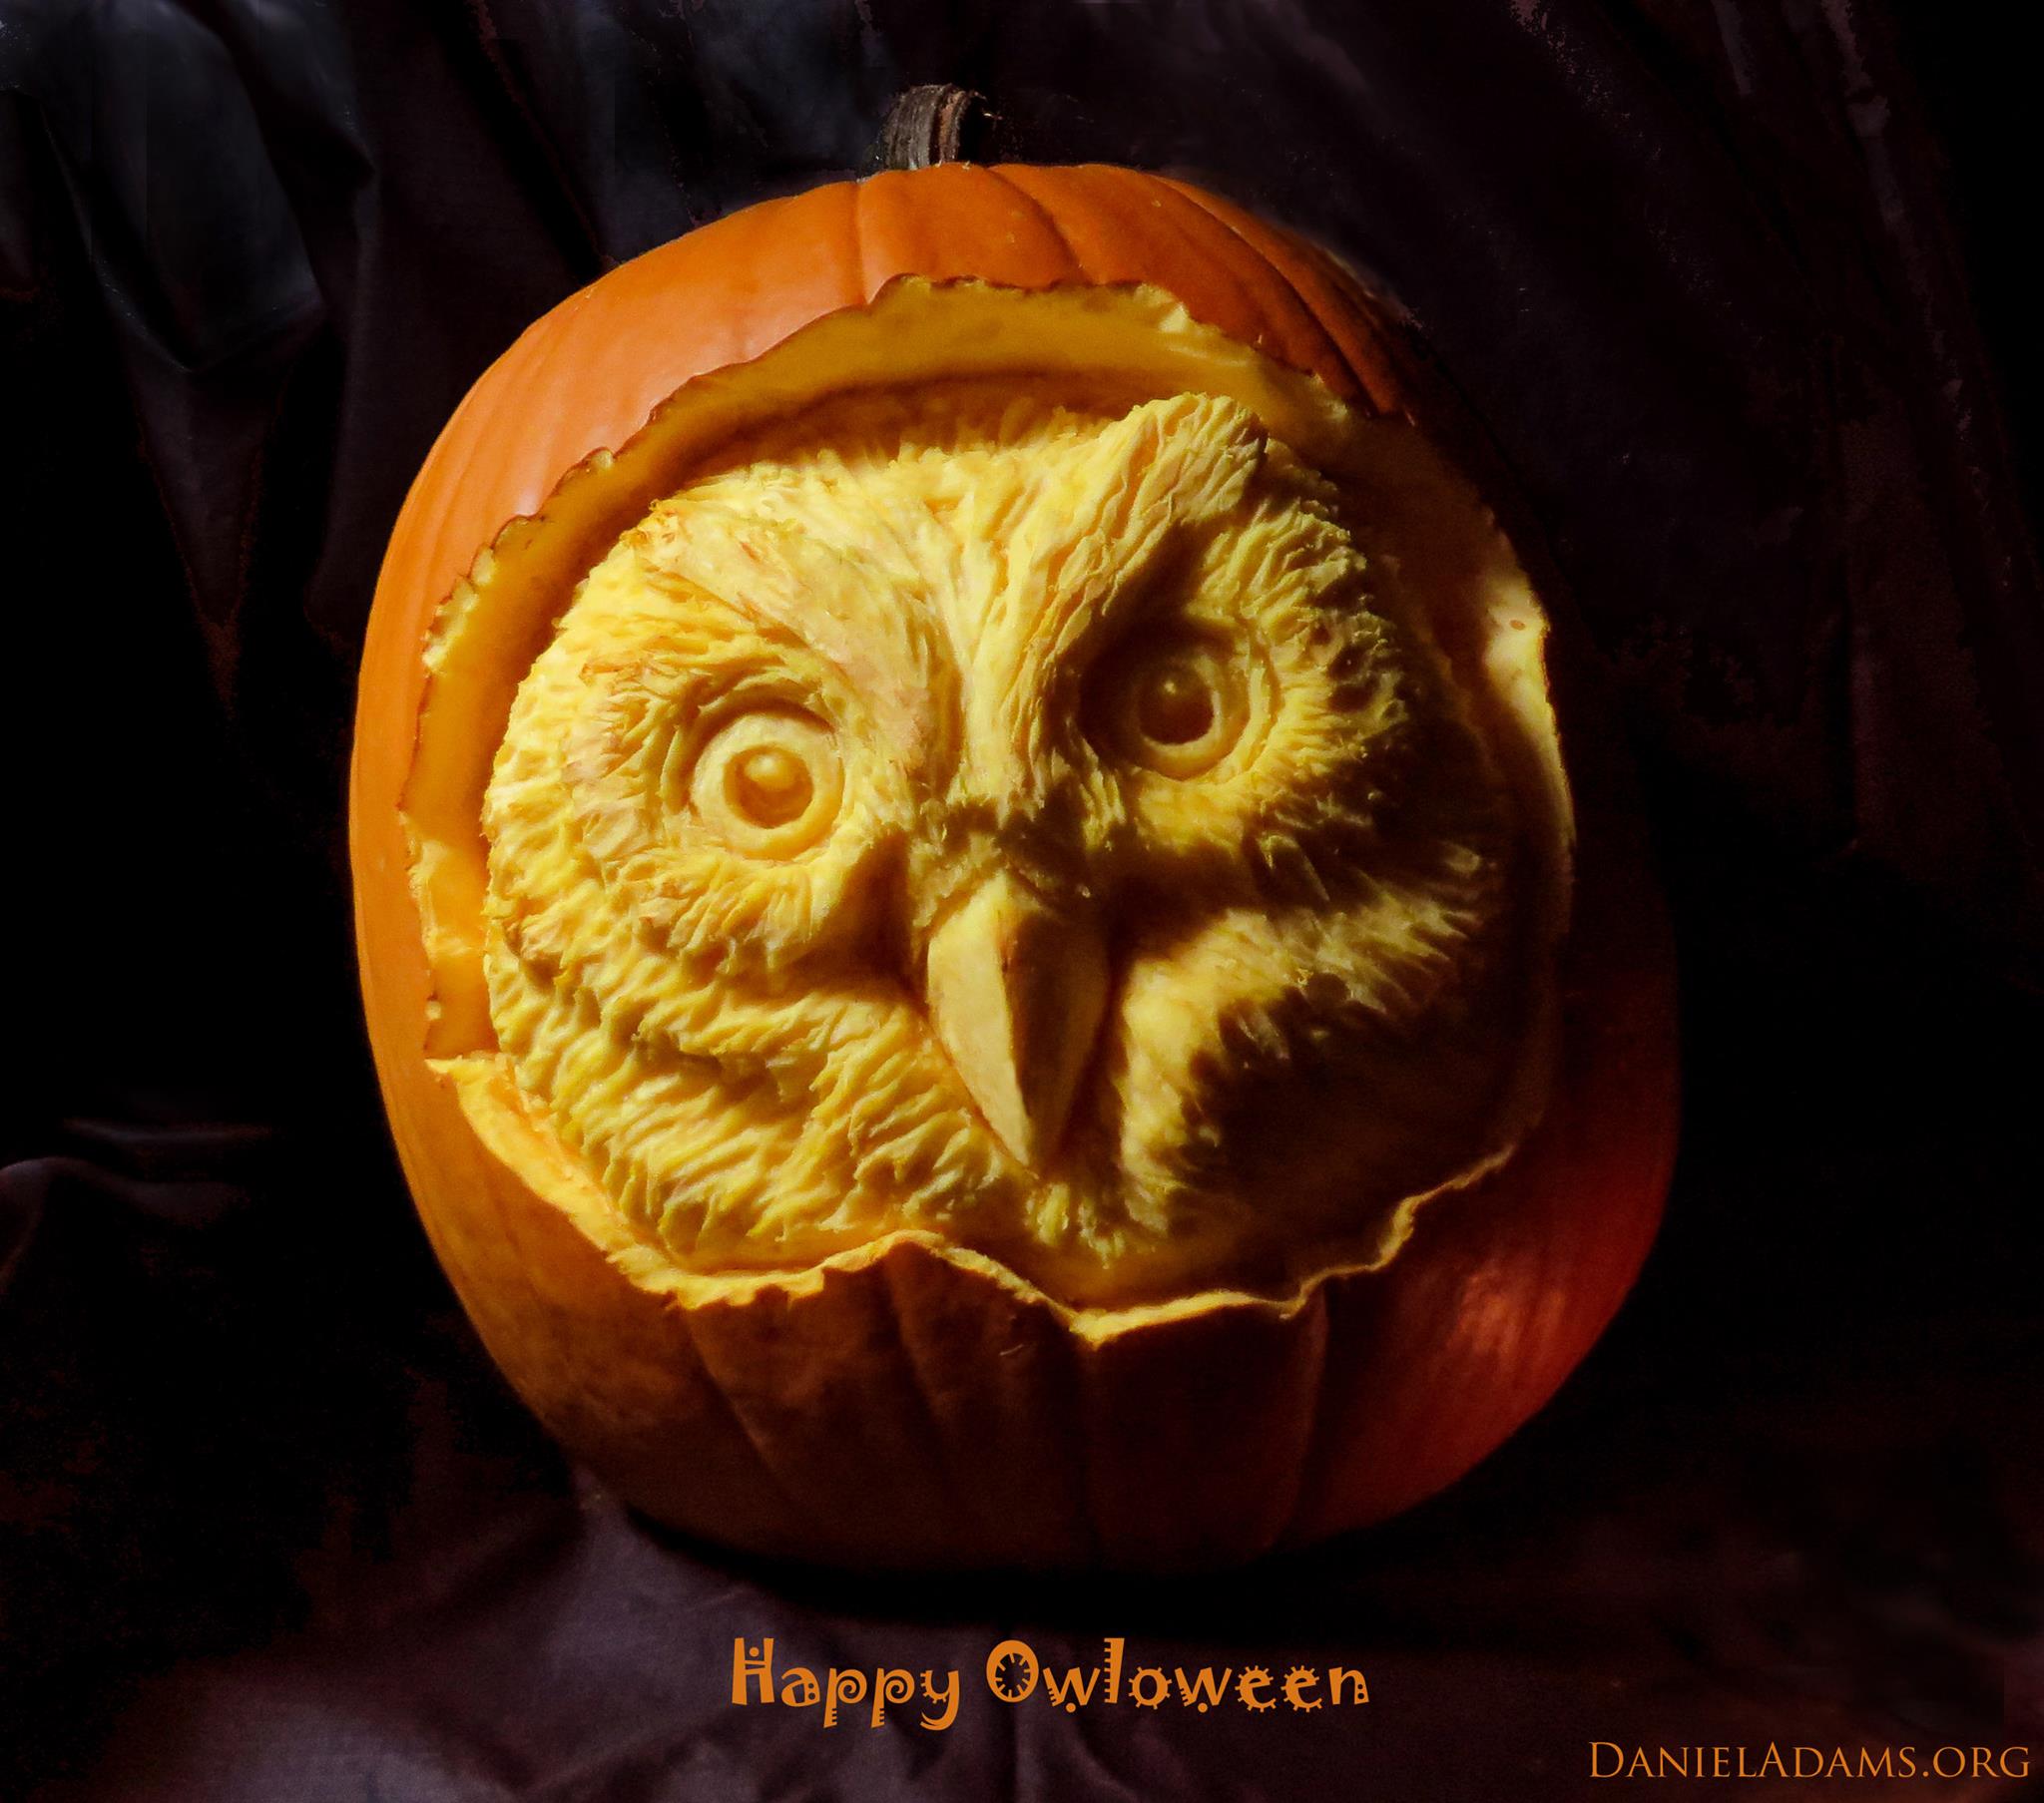 Happy Owloween by Daniel Adams